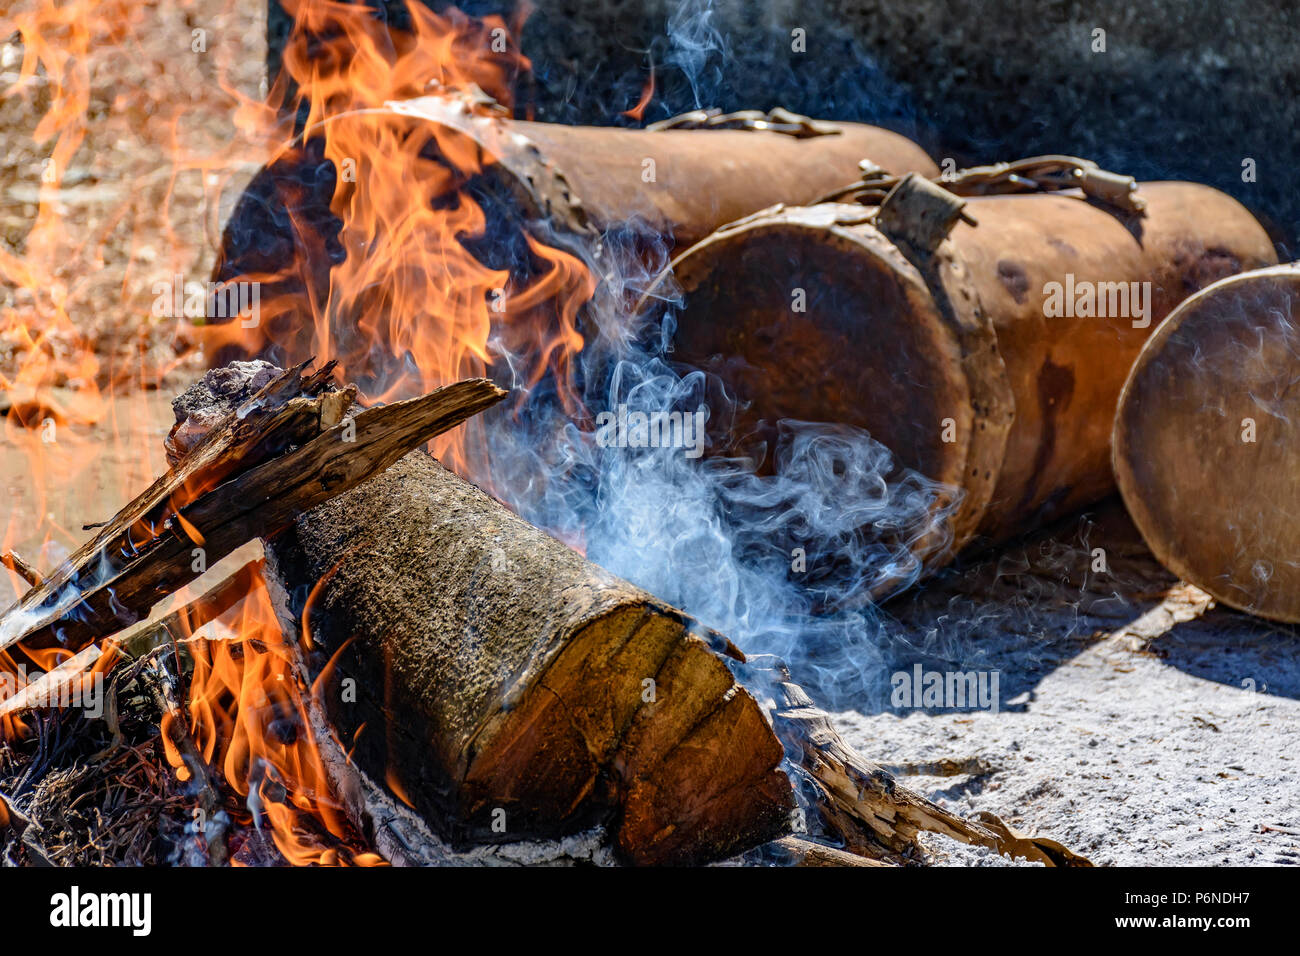 Ethnischen Trommeln in religiösen Festival in Lagoa Santa, Minas Gerais in der Nähe der Feuer verwendet, so dass das Leder dehnen und der Klang des Instruments einstellen. Stockfoto